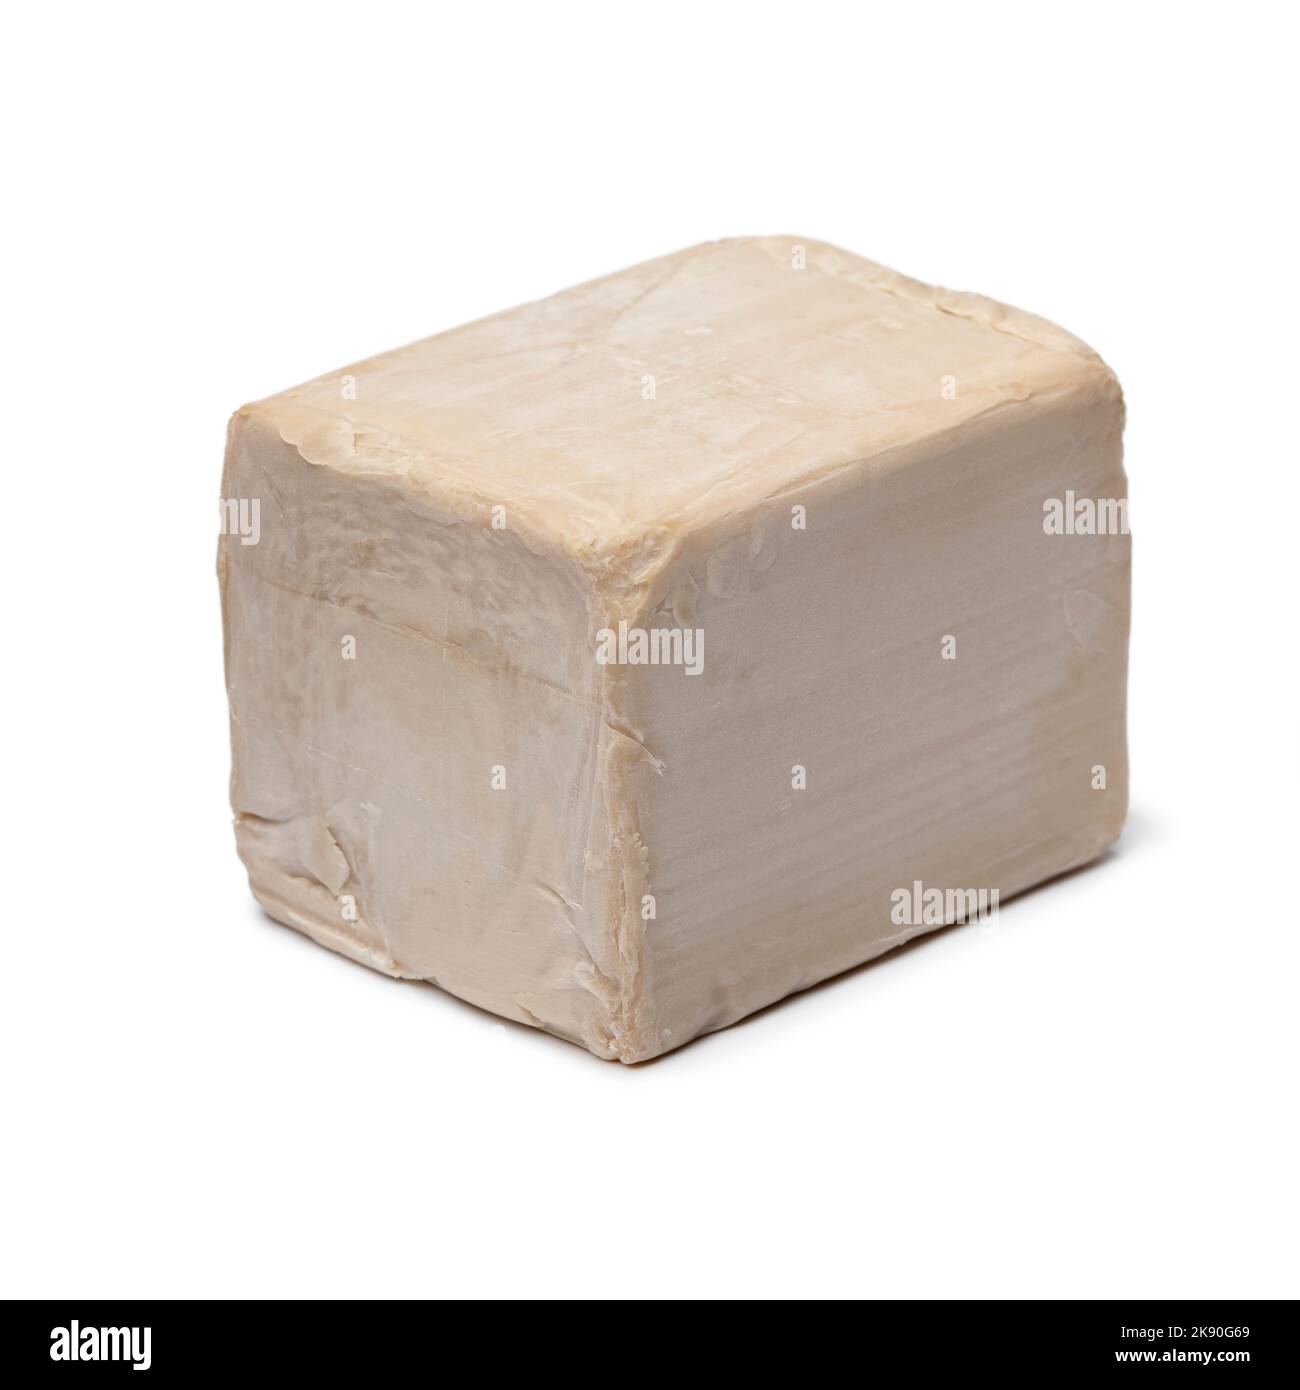 Single fresh yeast cube isolated on white background close up Stock Photo